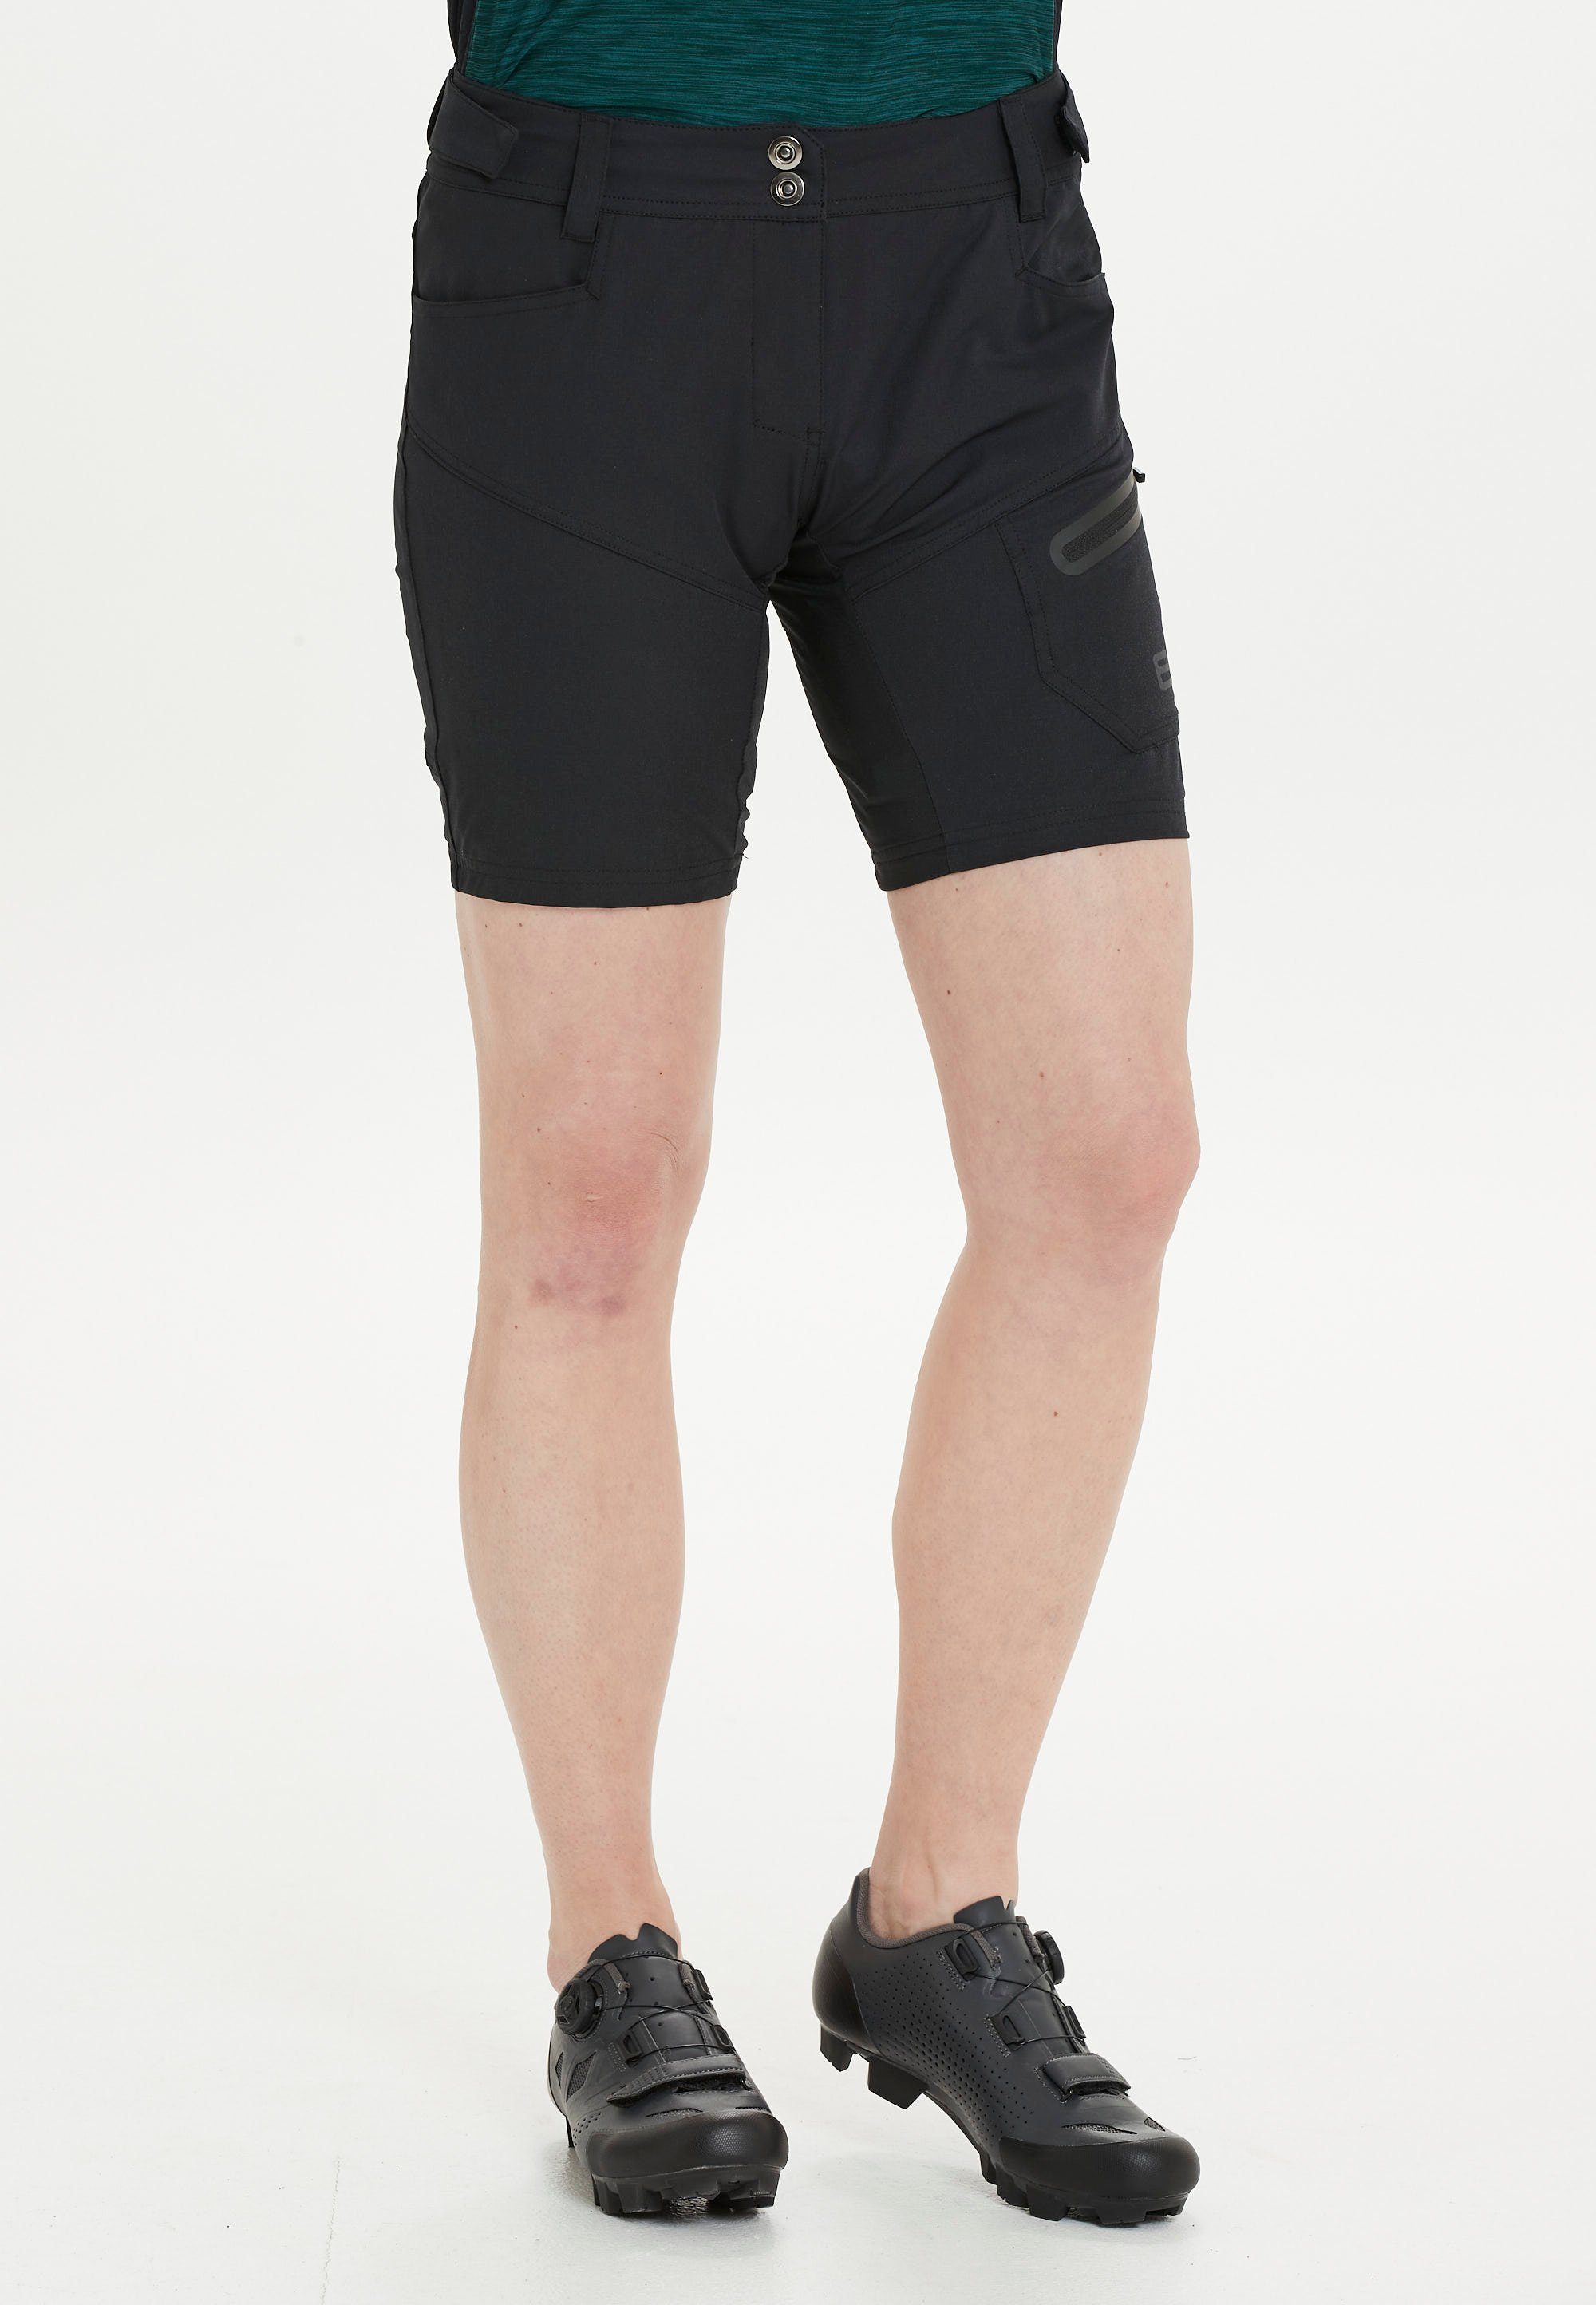 ENDURANCE Radhose Jamilla W 2 in 1 Shorts mit herausnehmbarer Innen-Tights schwarz